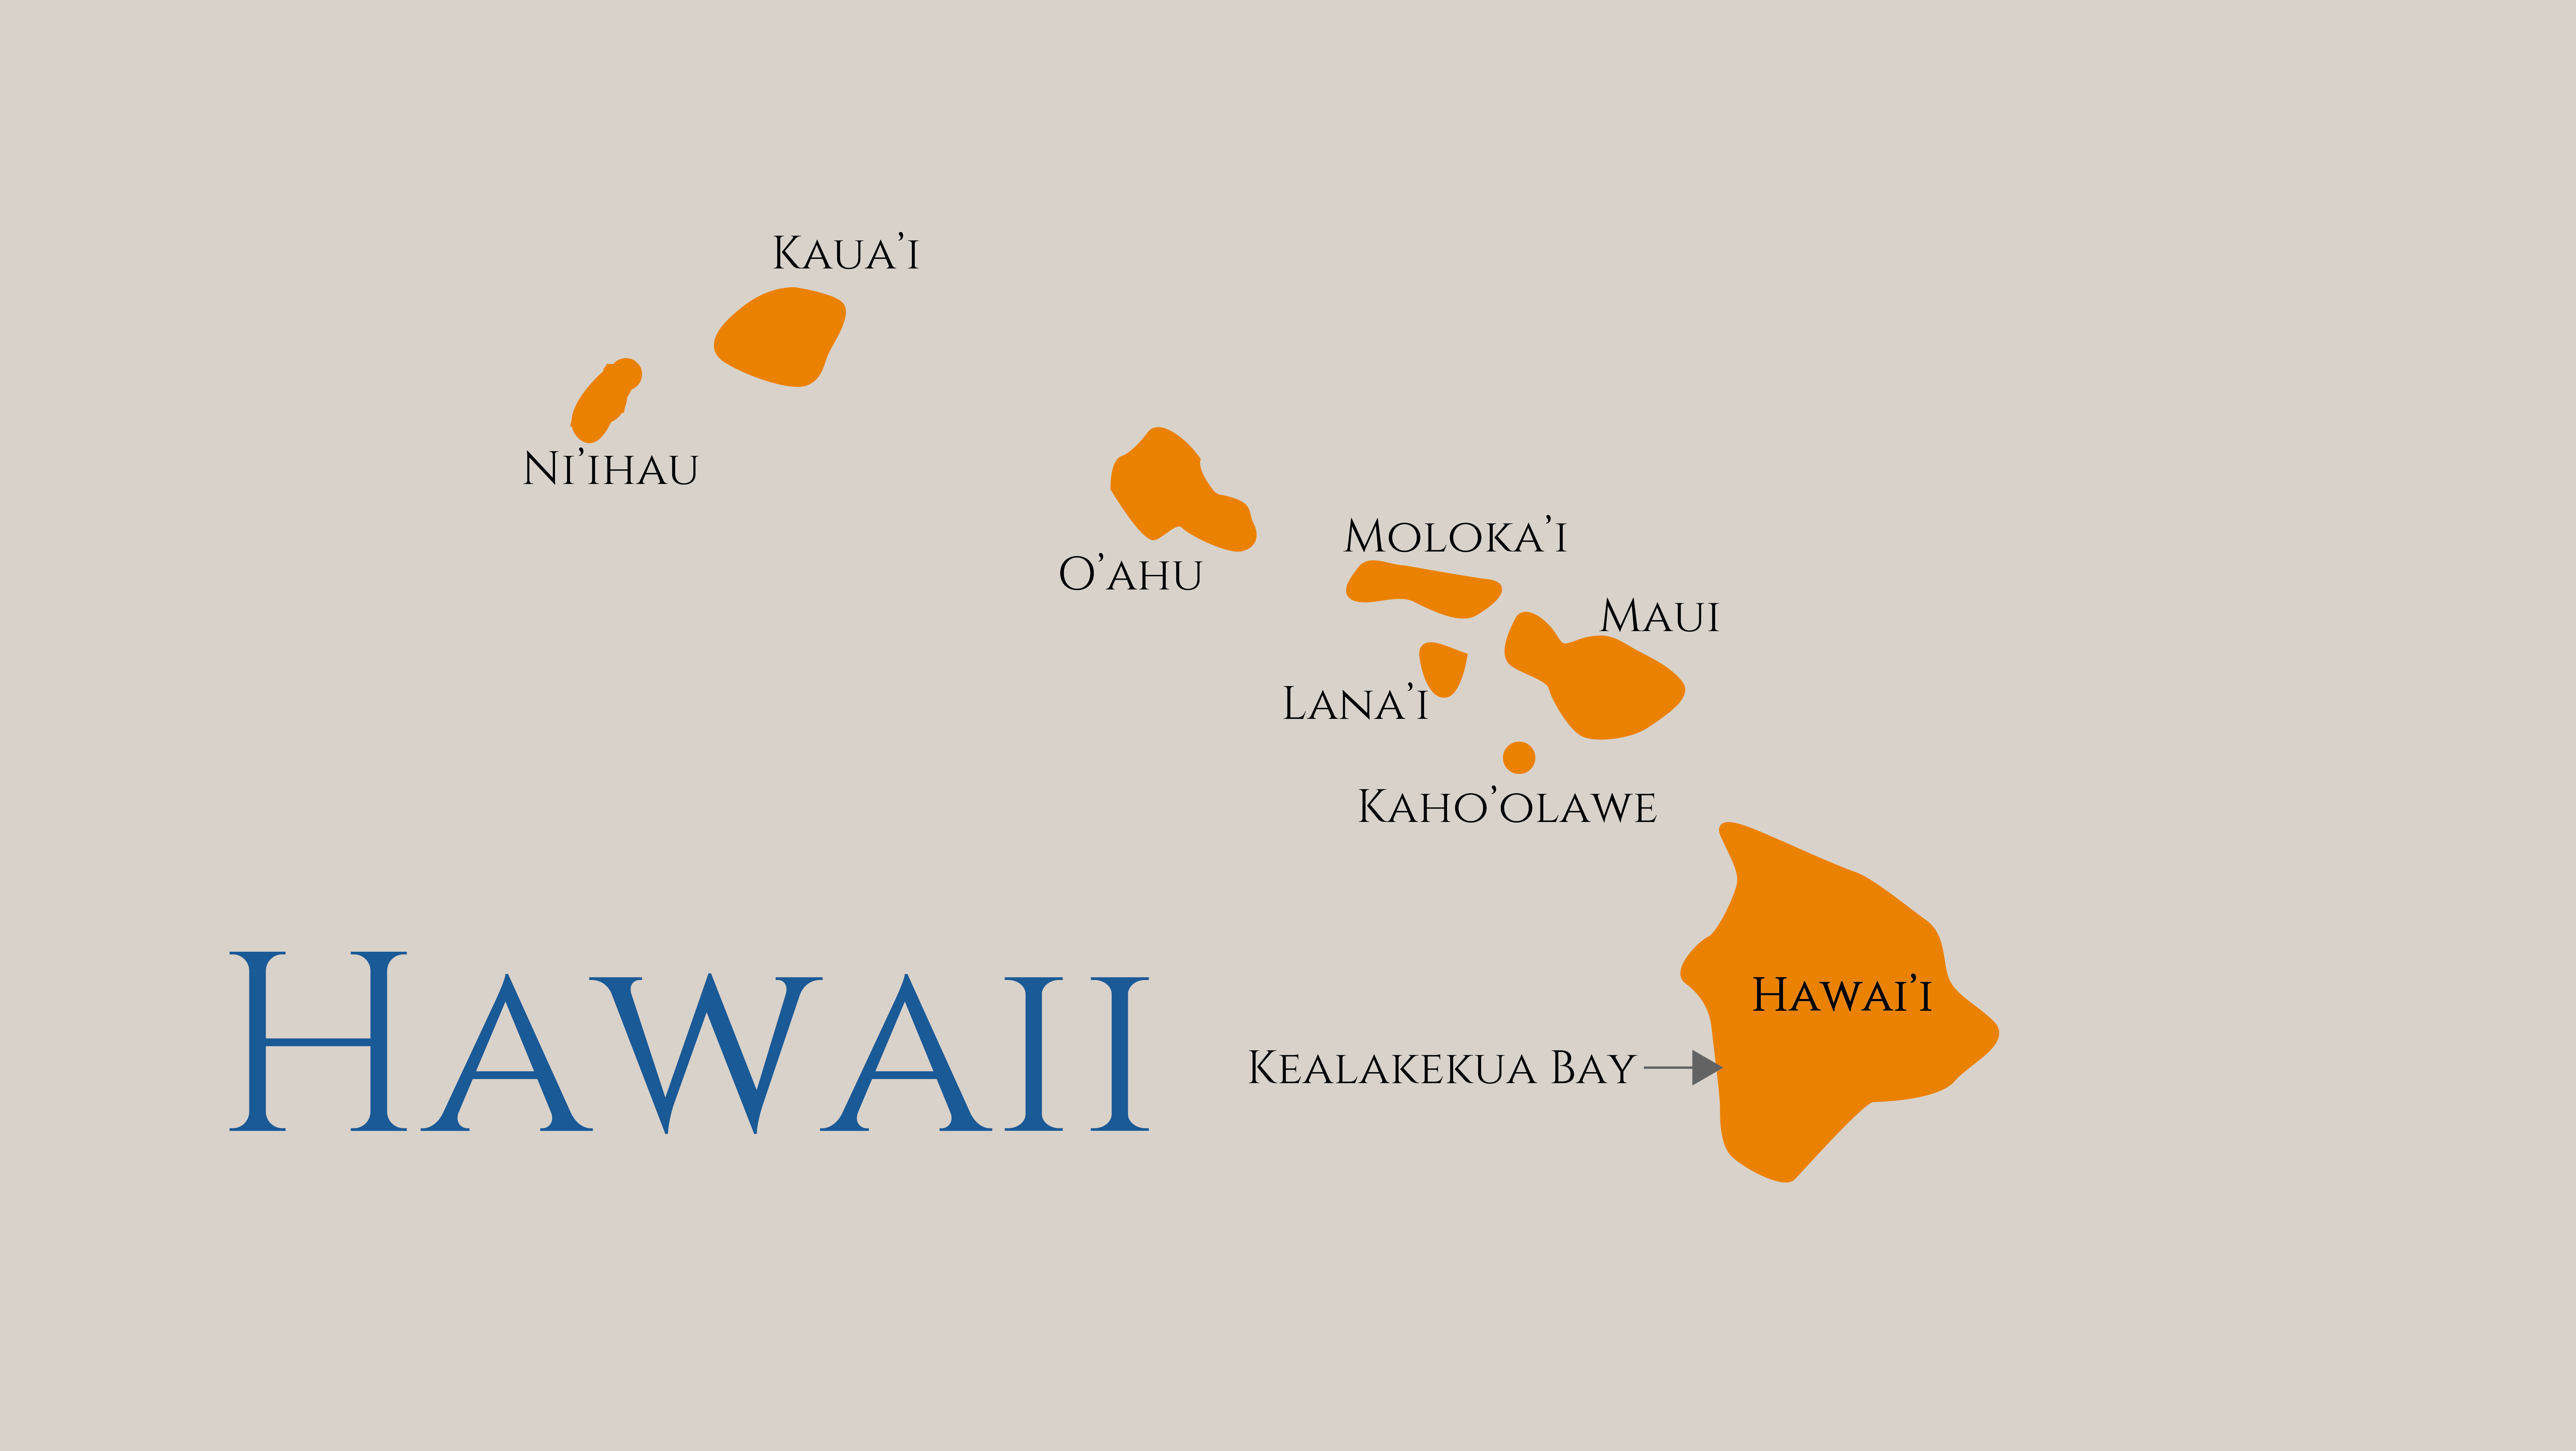 Carte Hawaii